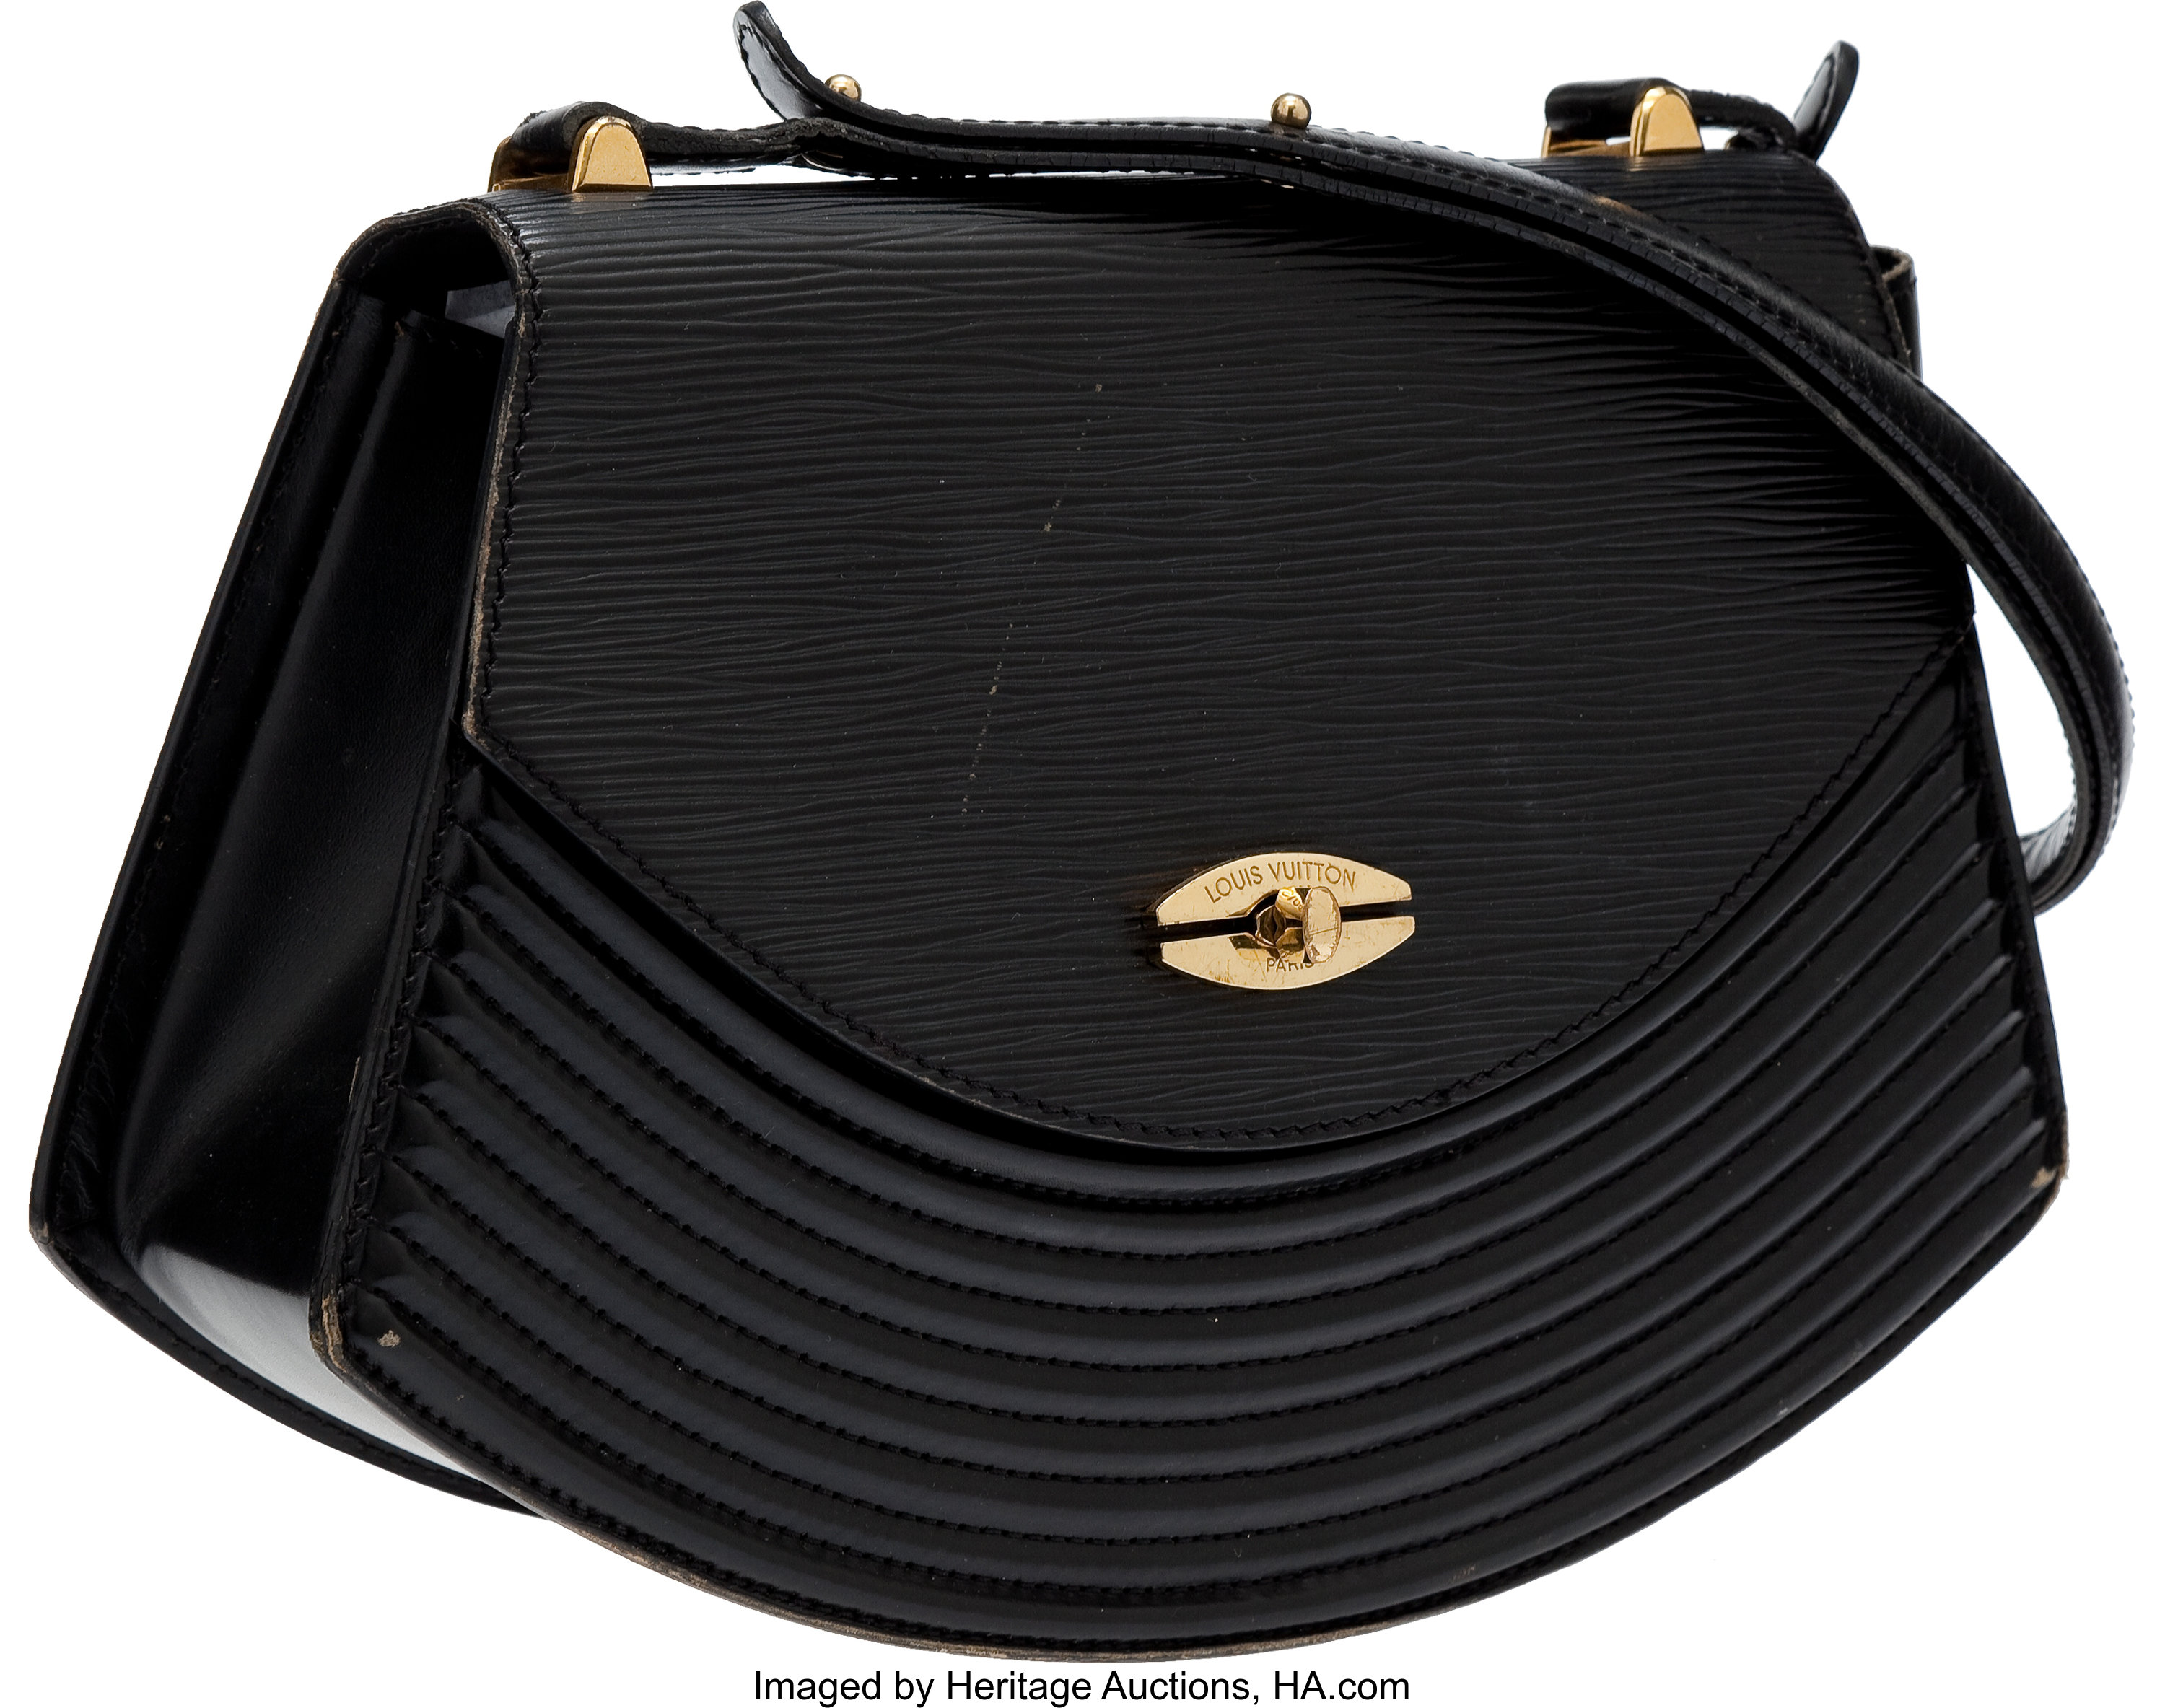 Louis Vuitton Tilsit Shoulder Bag - Farfetch